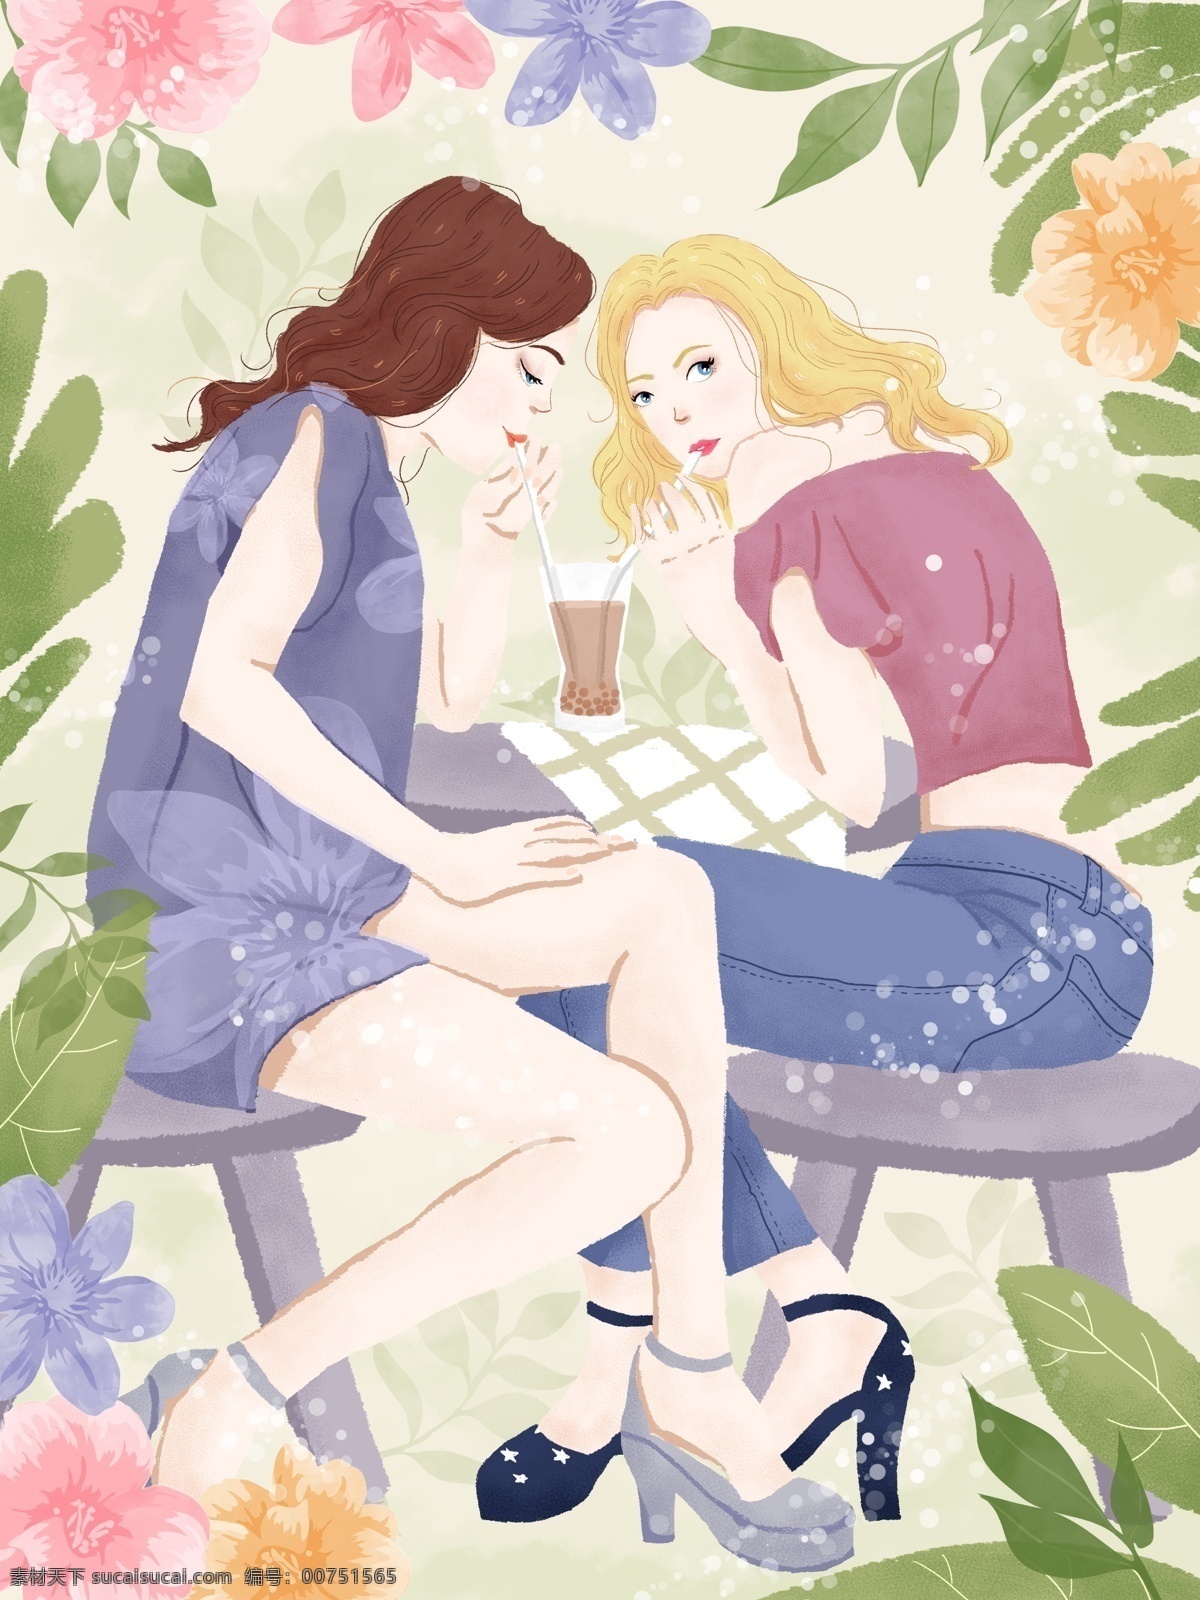 坐在 一起 喝 奶茶 闺 蜜 插画 美食 绿色 商业 闺蜜日常 姐妹 朋友 友情 手绘 小清新 肌理写实 鲜花 海报